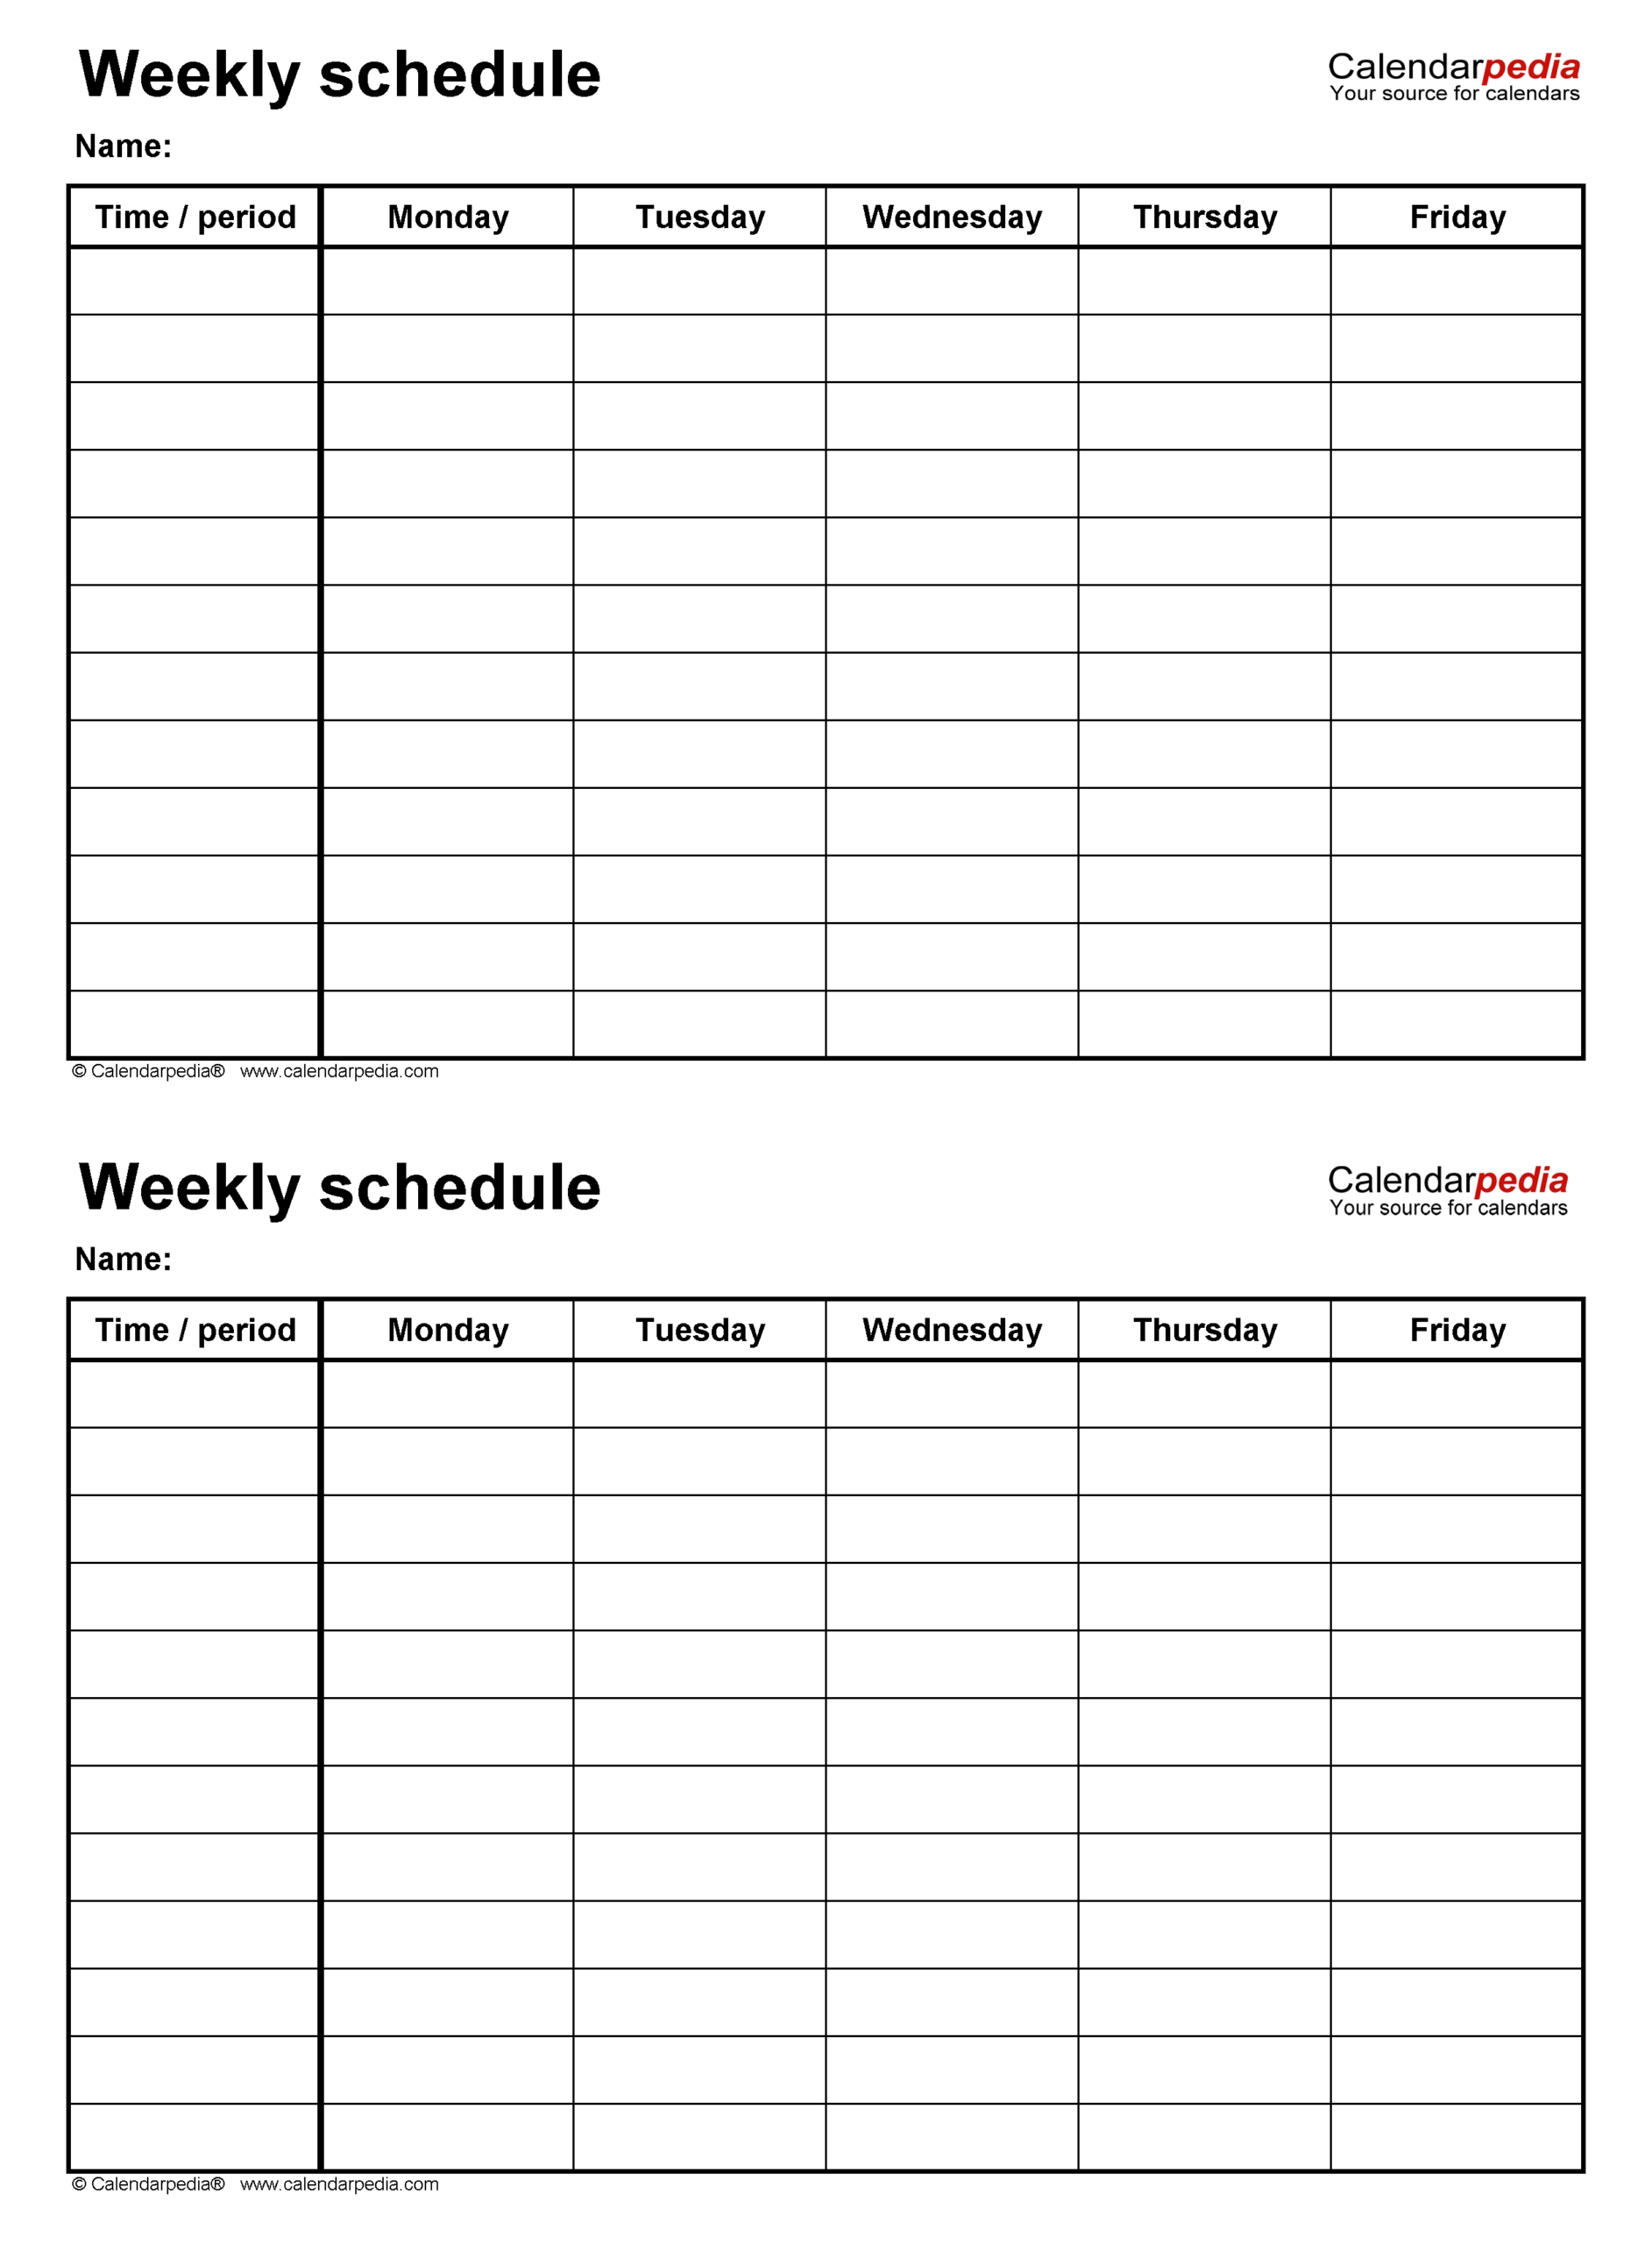 Free 4 Week Blank Calender Template Get Your Calendar Printable regarding Free Nfl Schedule Printable Calendar Printables Free Blank